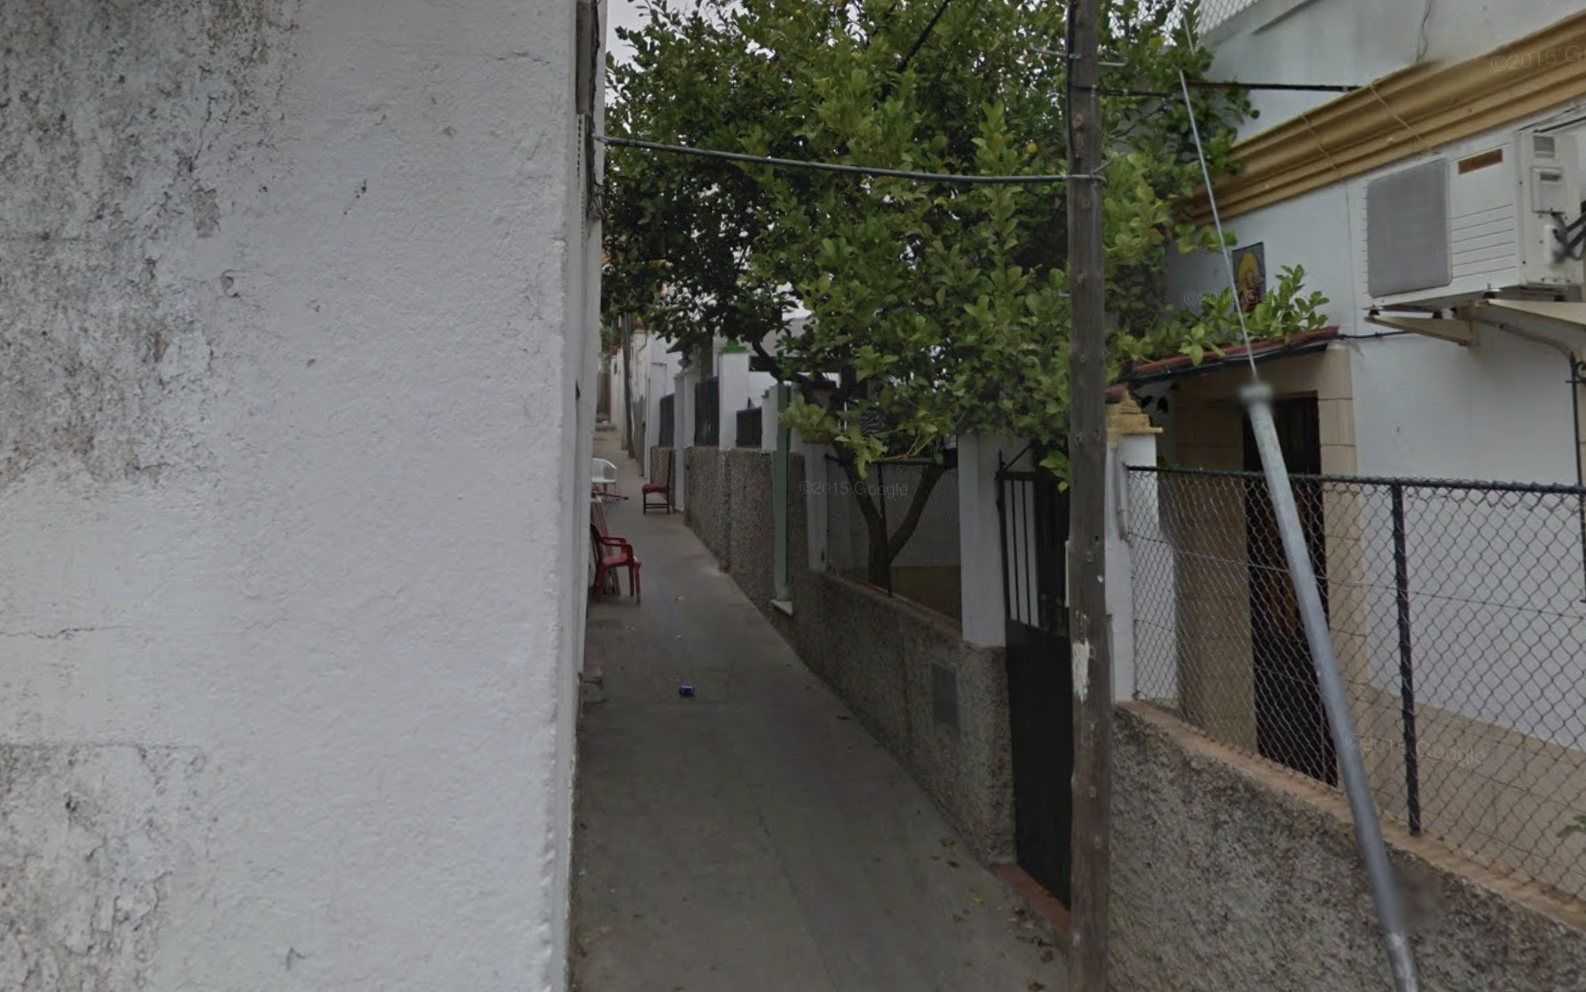 Excepcional intervención sanitaria y policial. En la imagen, la calle Emilia, en una imagen de Google Maps, en la barriada de Torresoto.